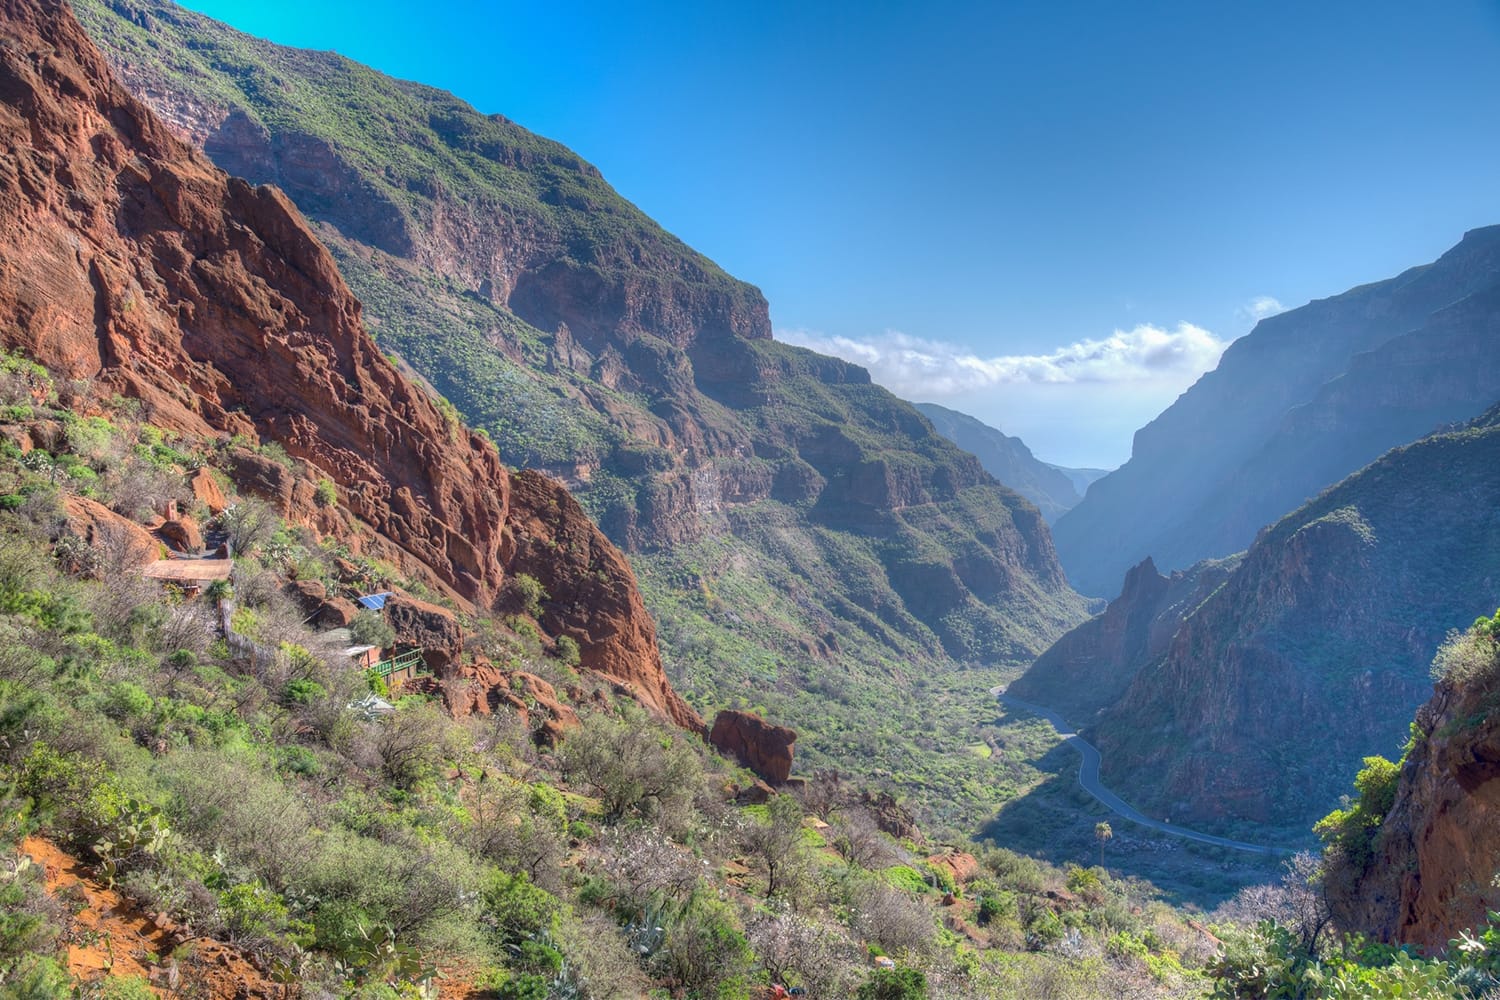 Barranco de Guayadeque valley at Gran Canaria, Canary islands, Spain.